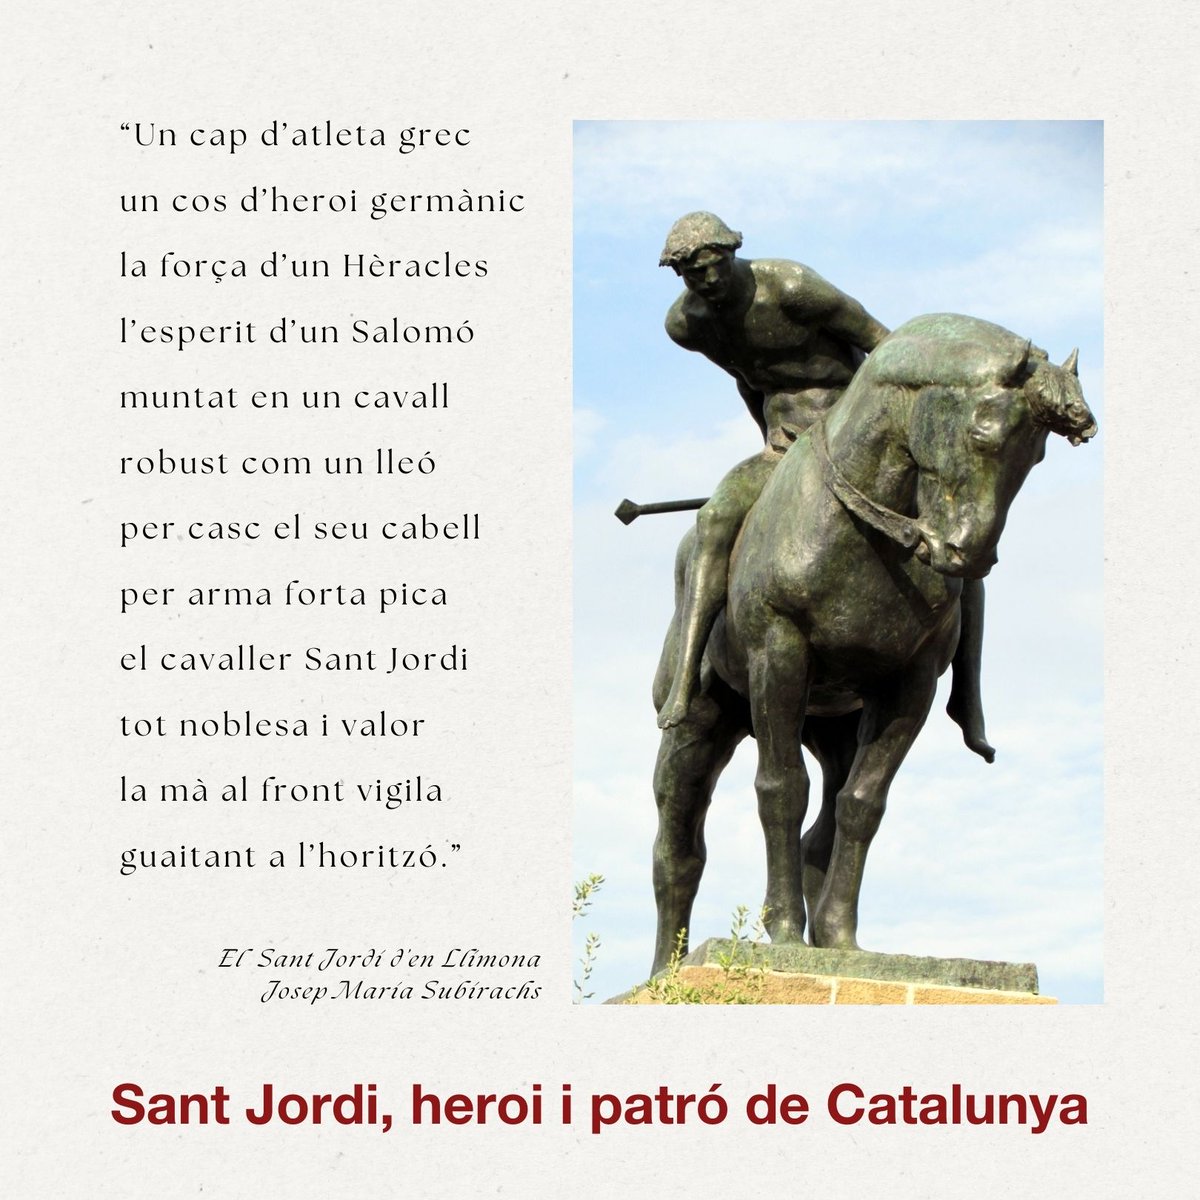 ‘Sant Jordi triomfant’. Aquesta magnífica estàtua eqüestre de #SantJordi, feta de bronze i instal·lada en un pedestal a la plaça Sant Jordi de Montjuïc, és obra de l’escultor Josep Llimona (Barcelona, 1863-1934). Enguany farà cent anys que fou inaugurada. #PatródeCatalunya